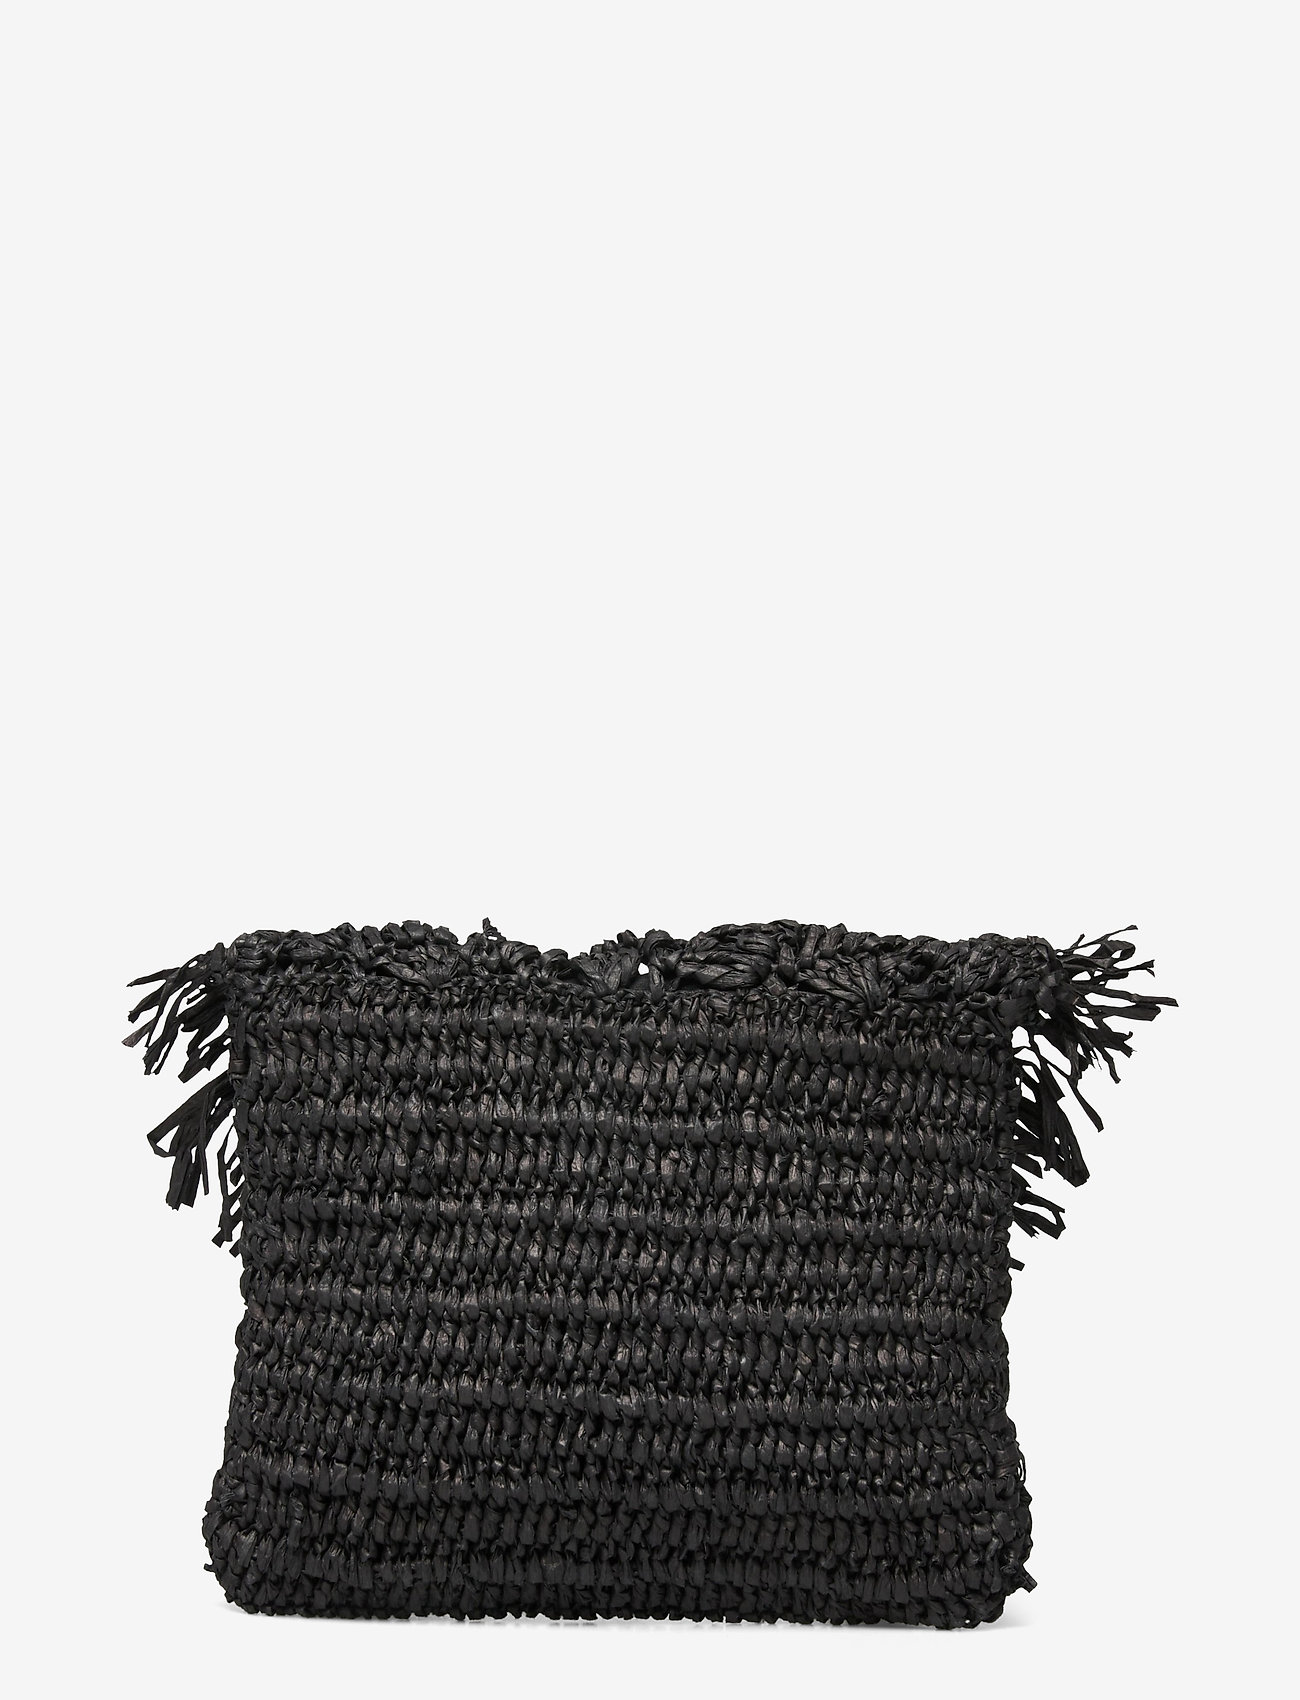 Pipol's Bazaar - Cultura Straw Clutch Black - odzież imprezowa w cenach outletowych - black - 1